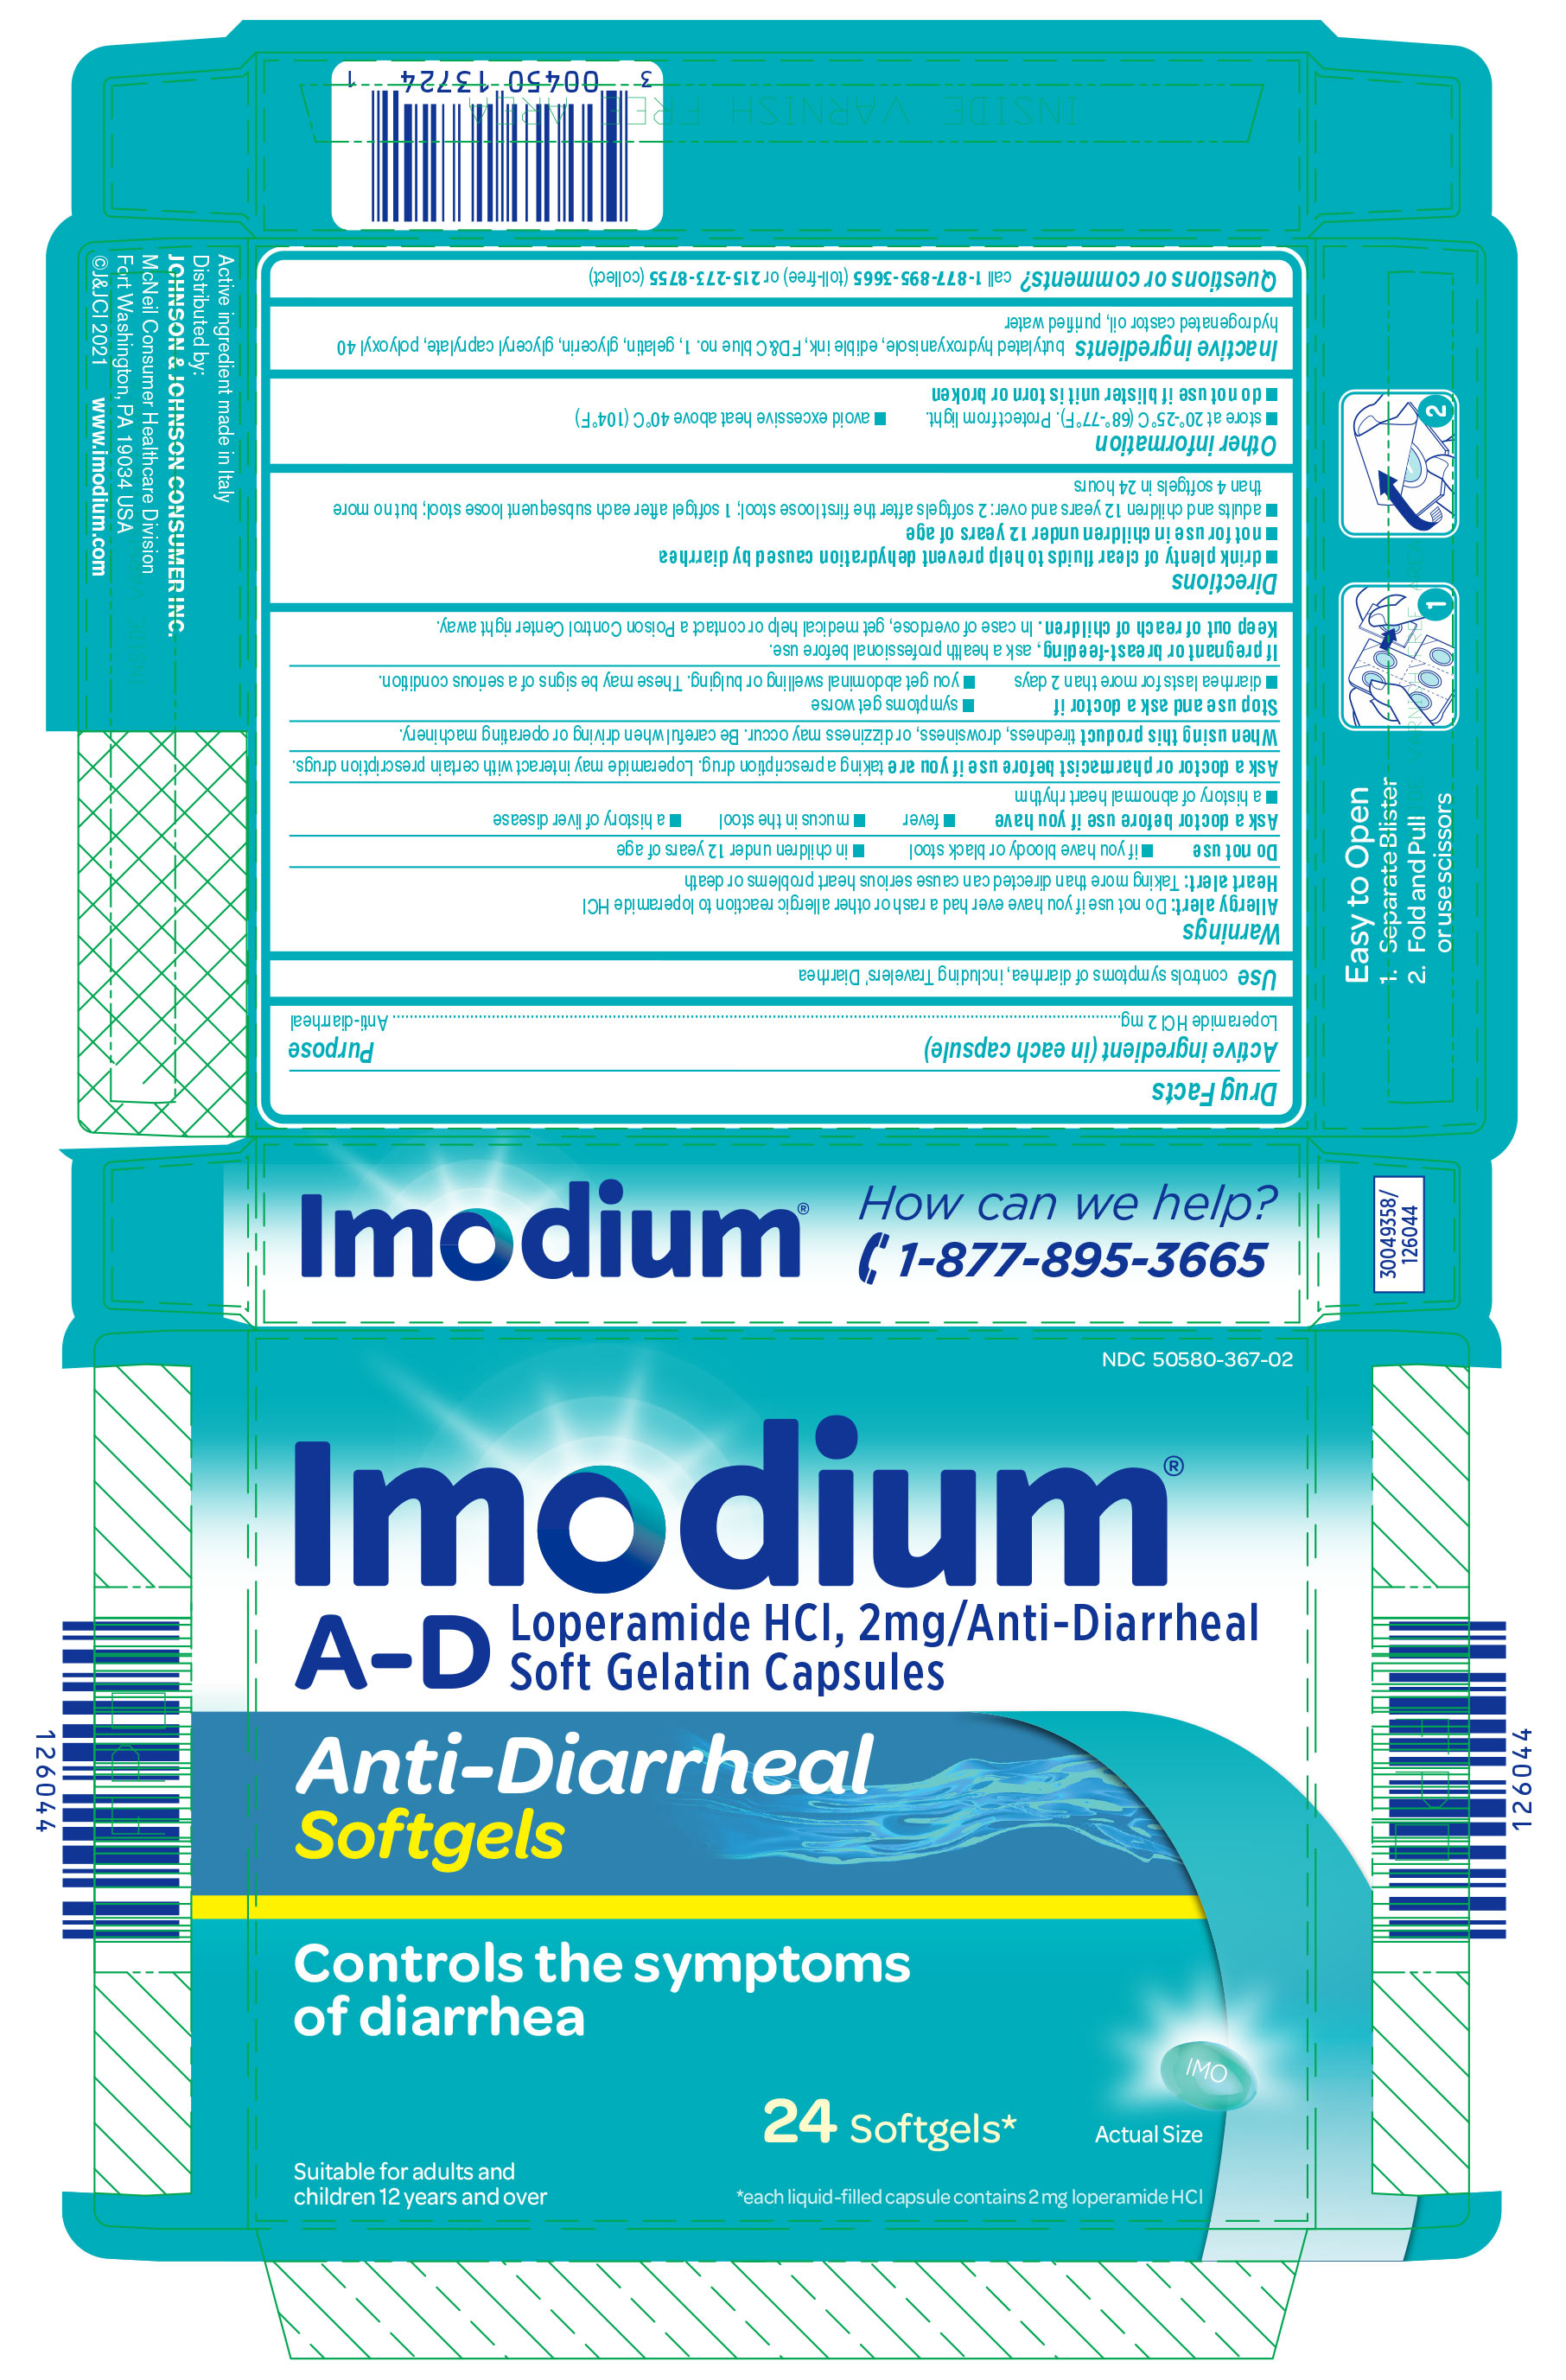 imodium-01